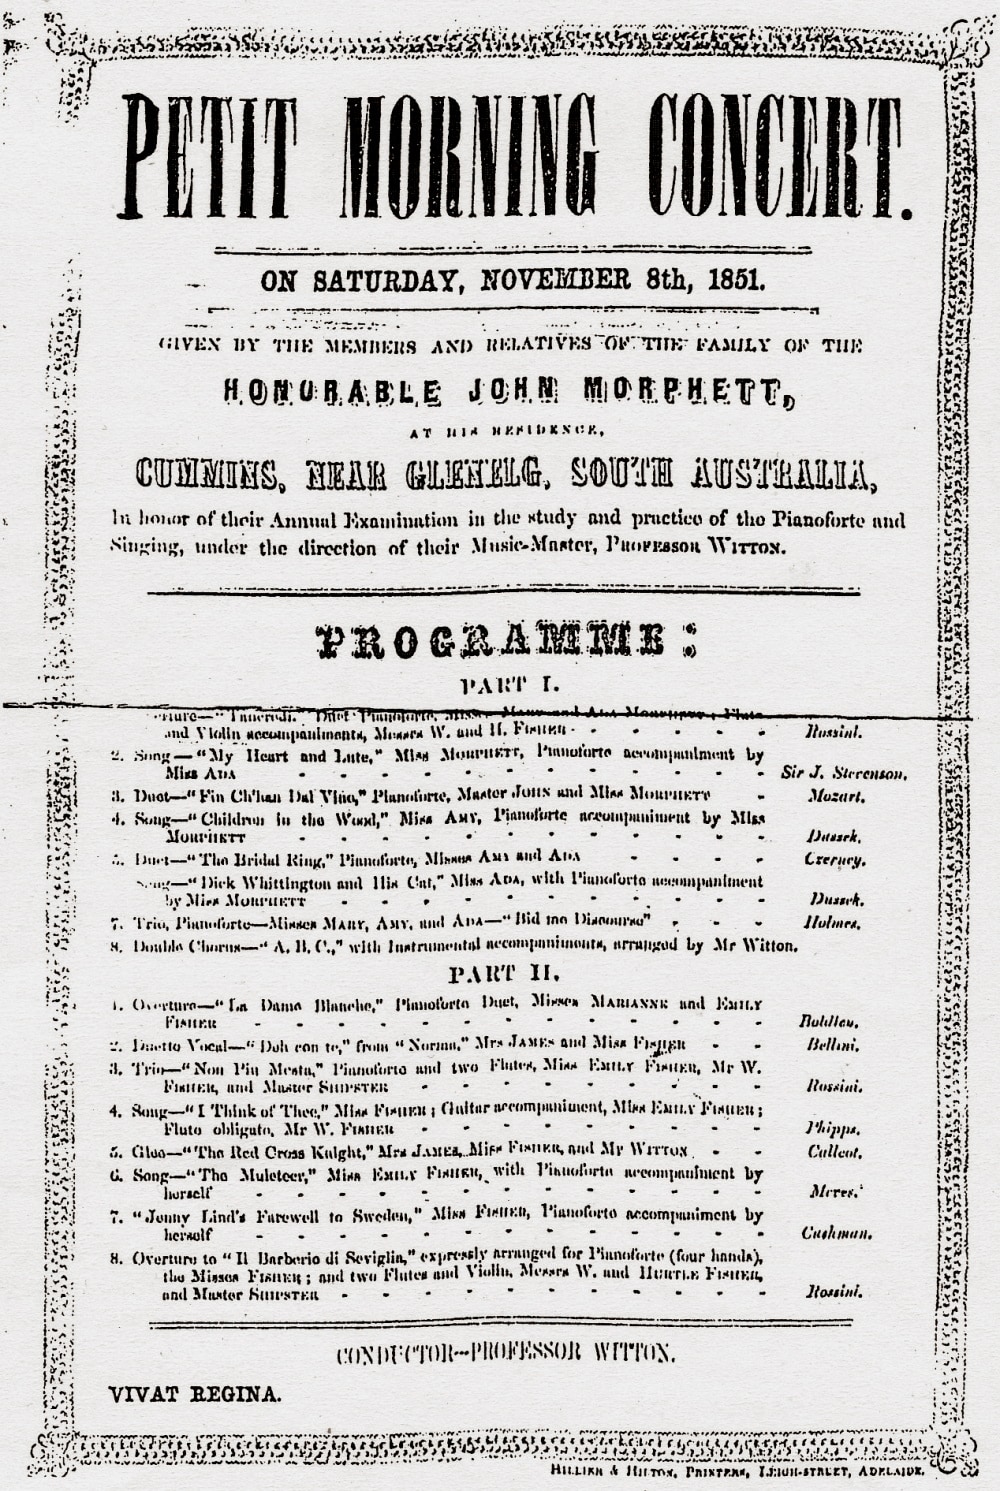 Morphett family concert, SA, 8 November 1851